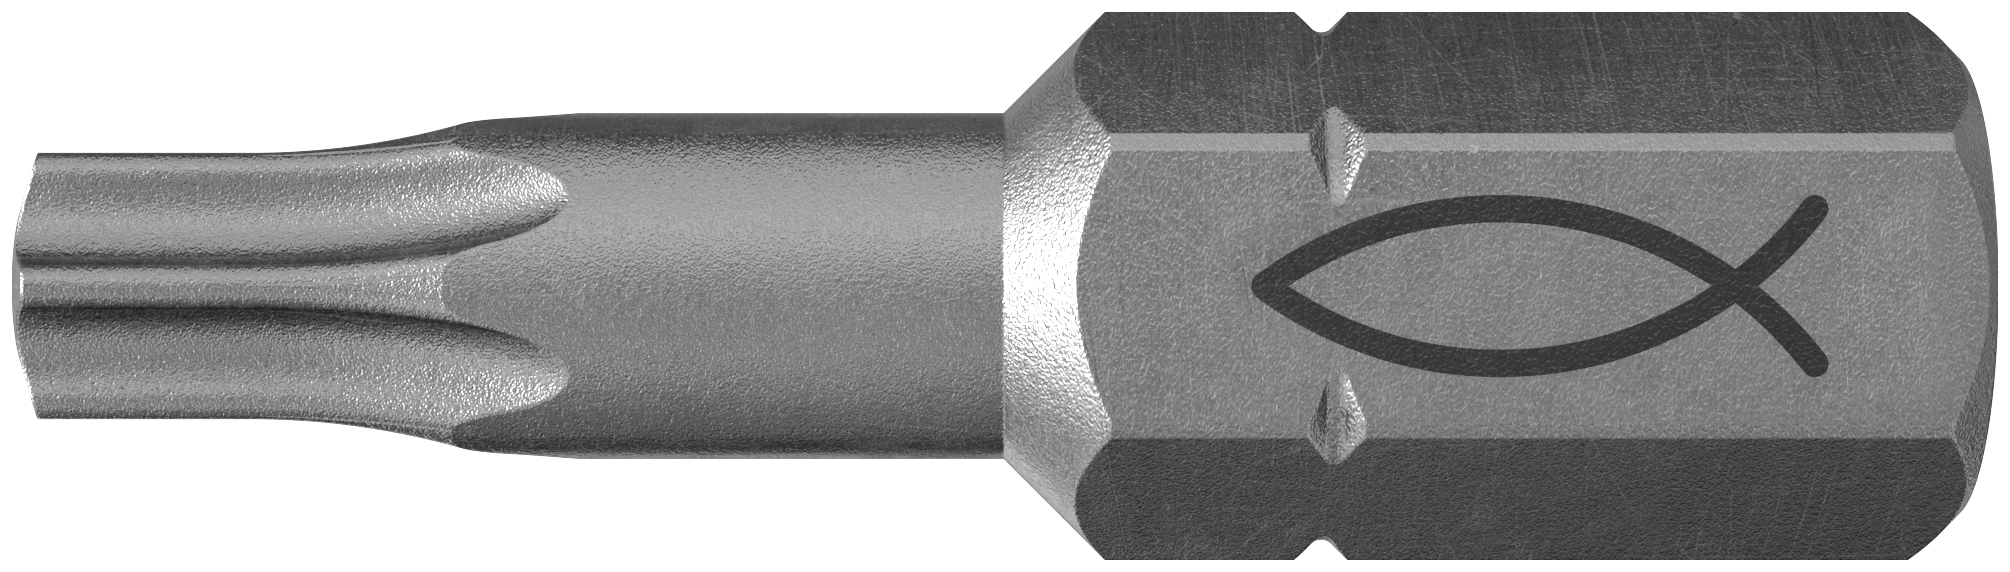 fischer Inserto per avvitatore FPB T 15 PROFI Bit W 10 (10 Pz.) L'inserto per trapano e avvitatore, in acciaio di alta qualit con elevata resistenza all?abrasione per uso professionale.